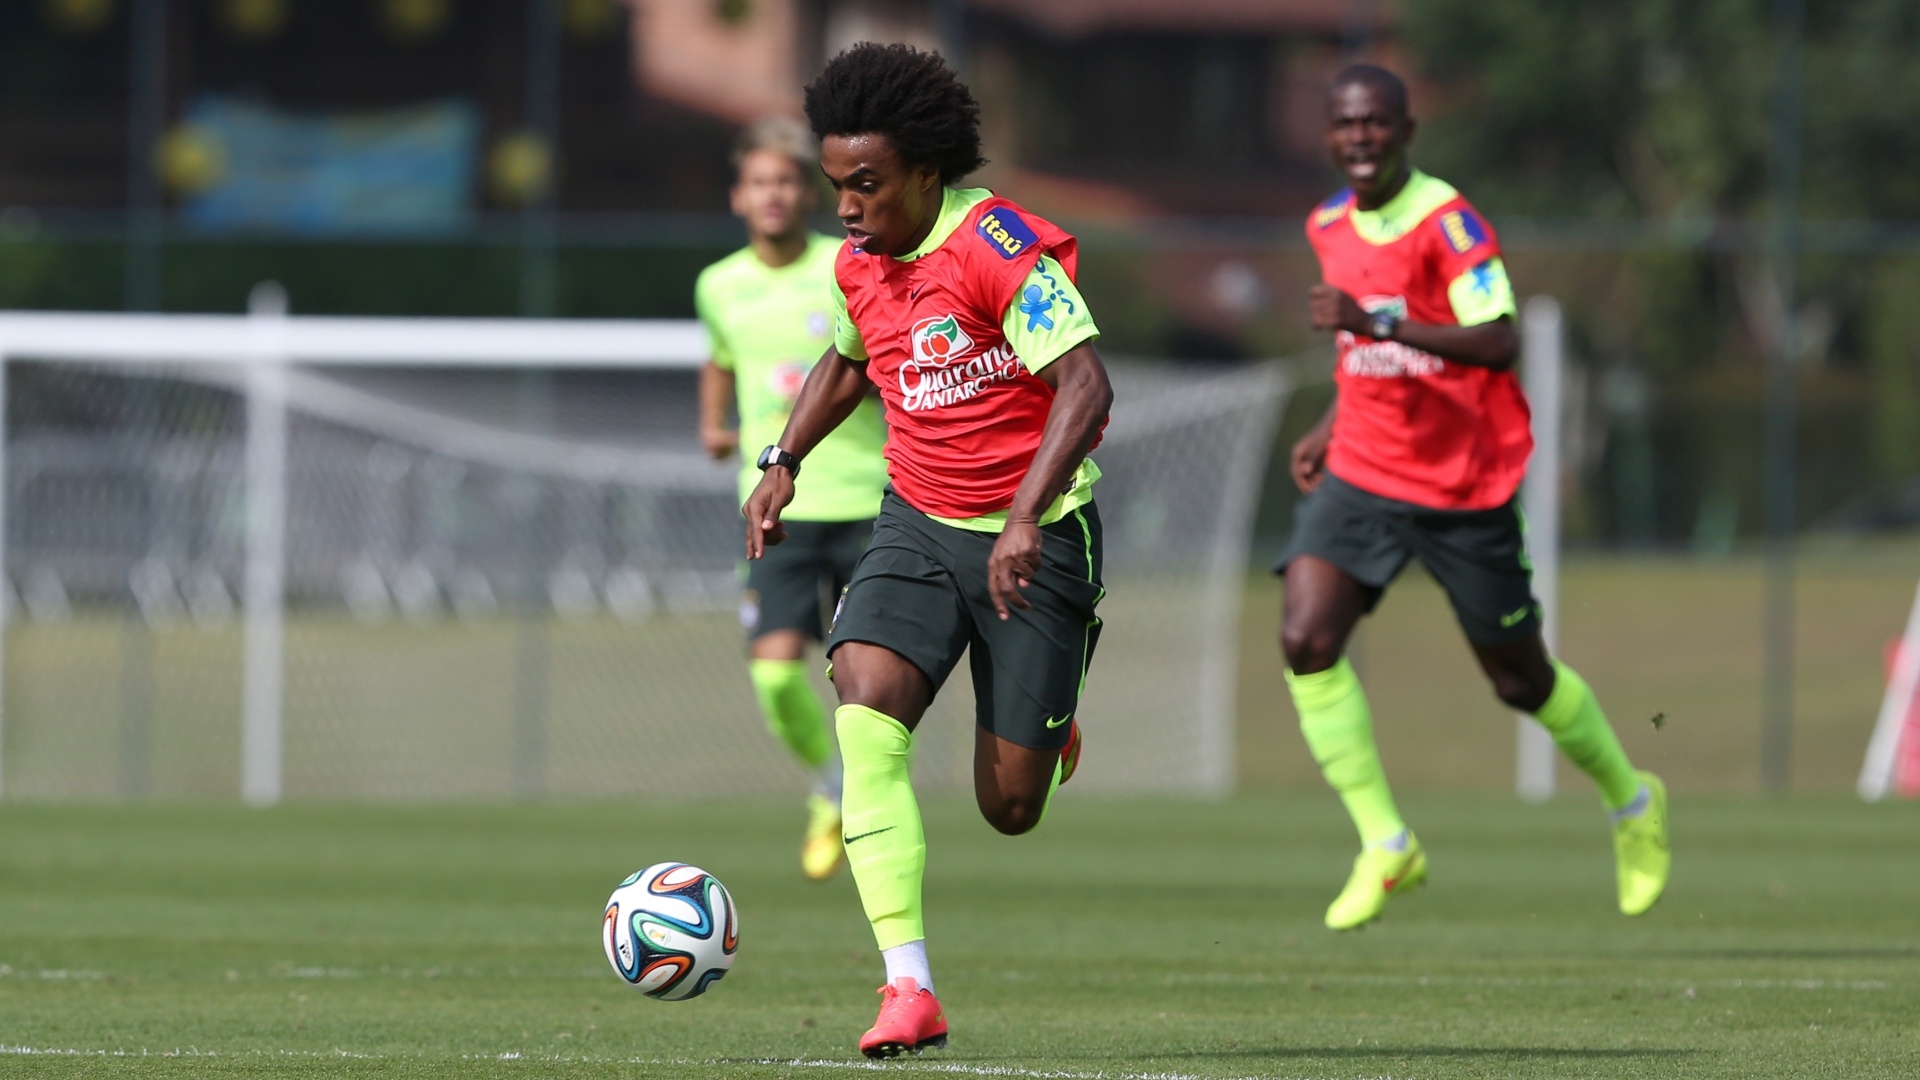 26.jun.2014 - Willian corre com a bola durante coletiva da seleção brasileira em treino na Granja Comary